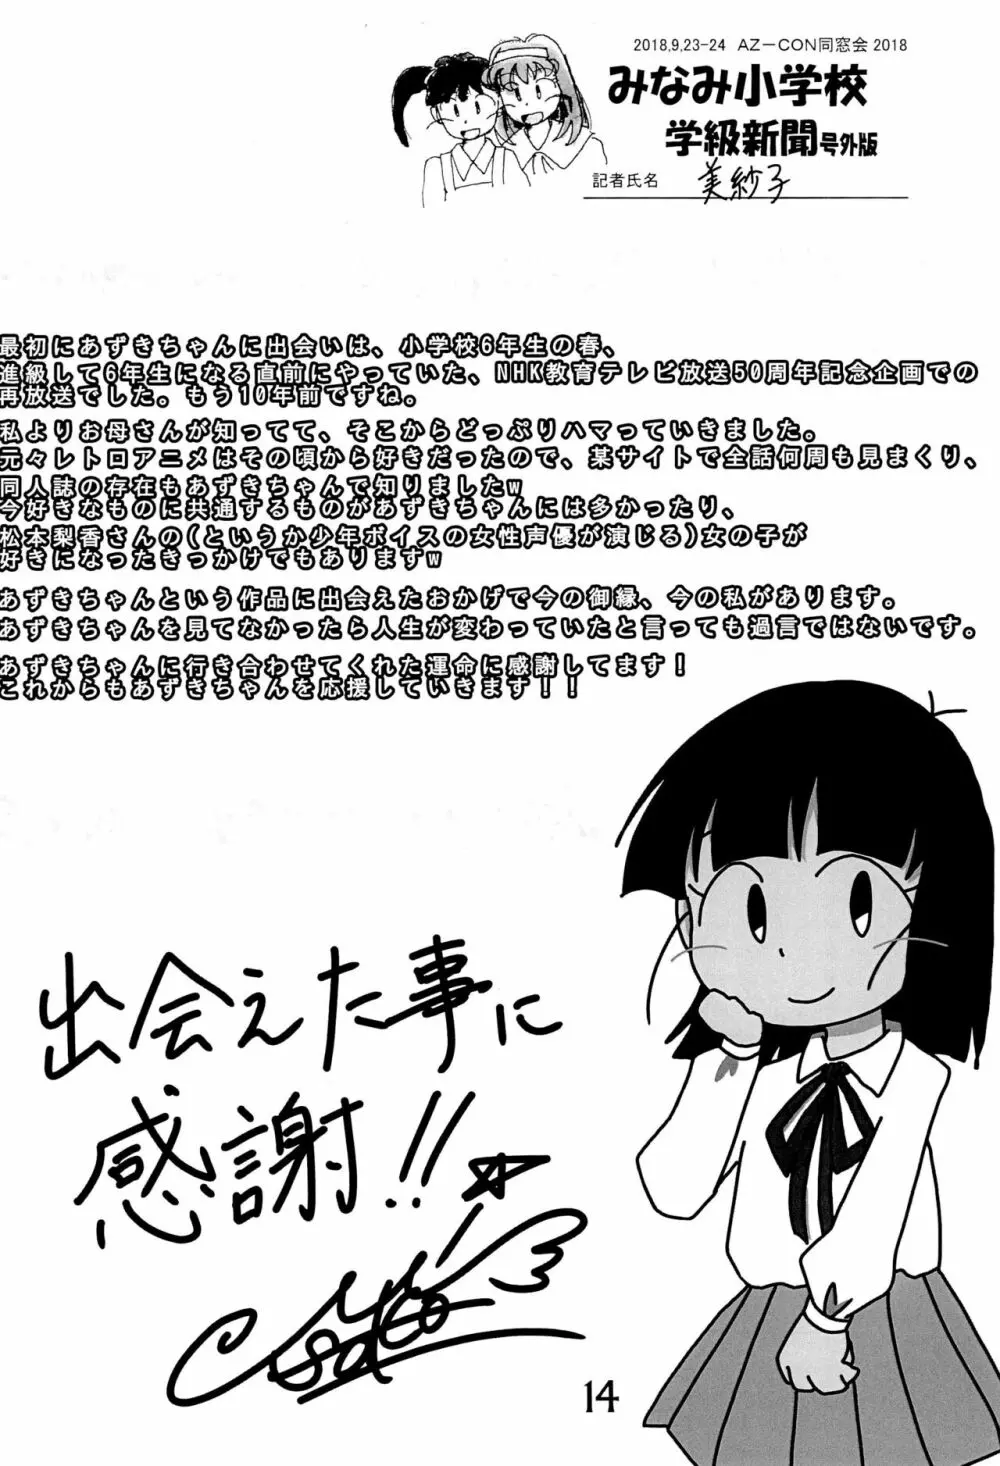 みなみ小学校学級新聞2018+号外版 14ページ